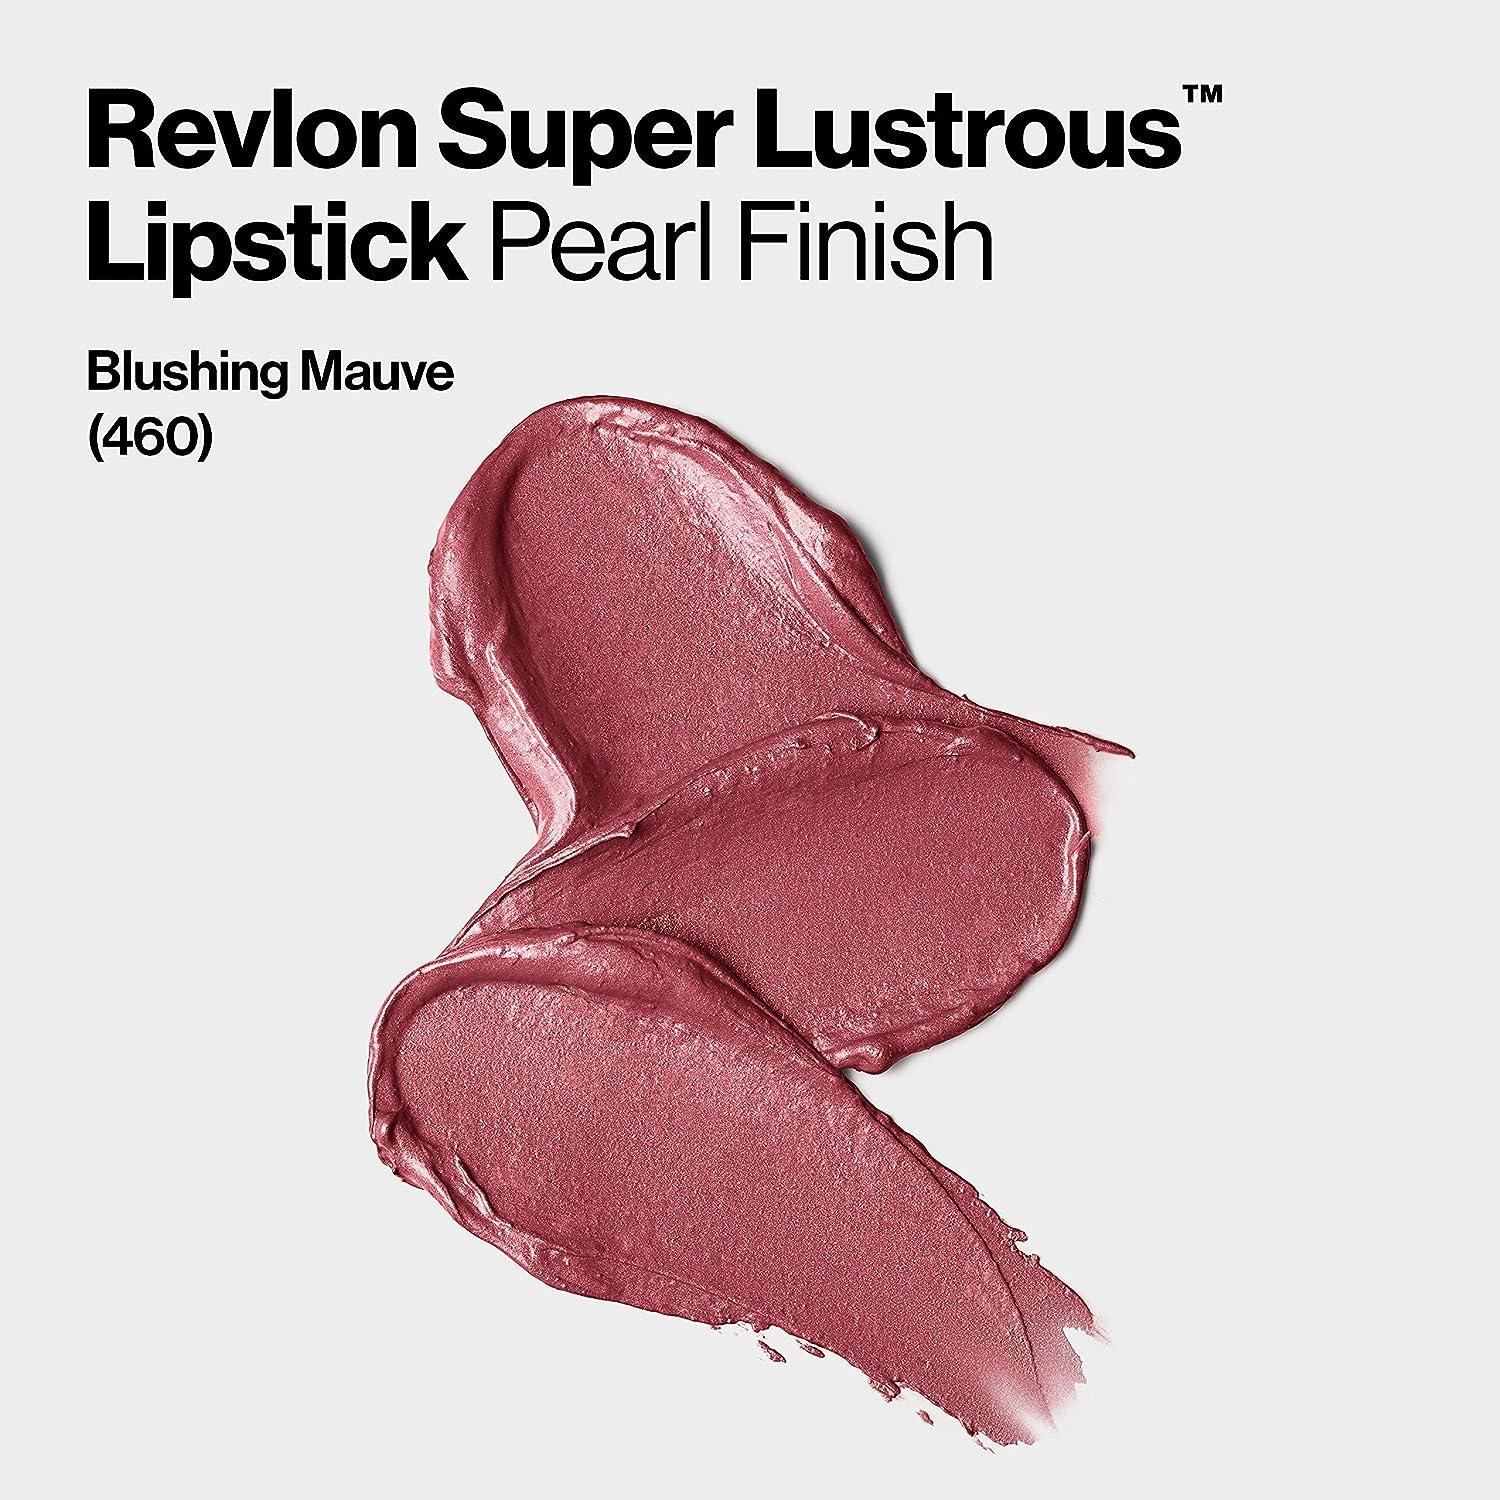 Revlon Super Lustrous Lipstick with Vitamin E and Avocado Oil